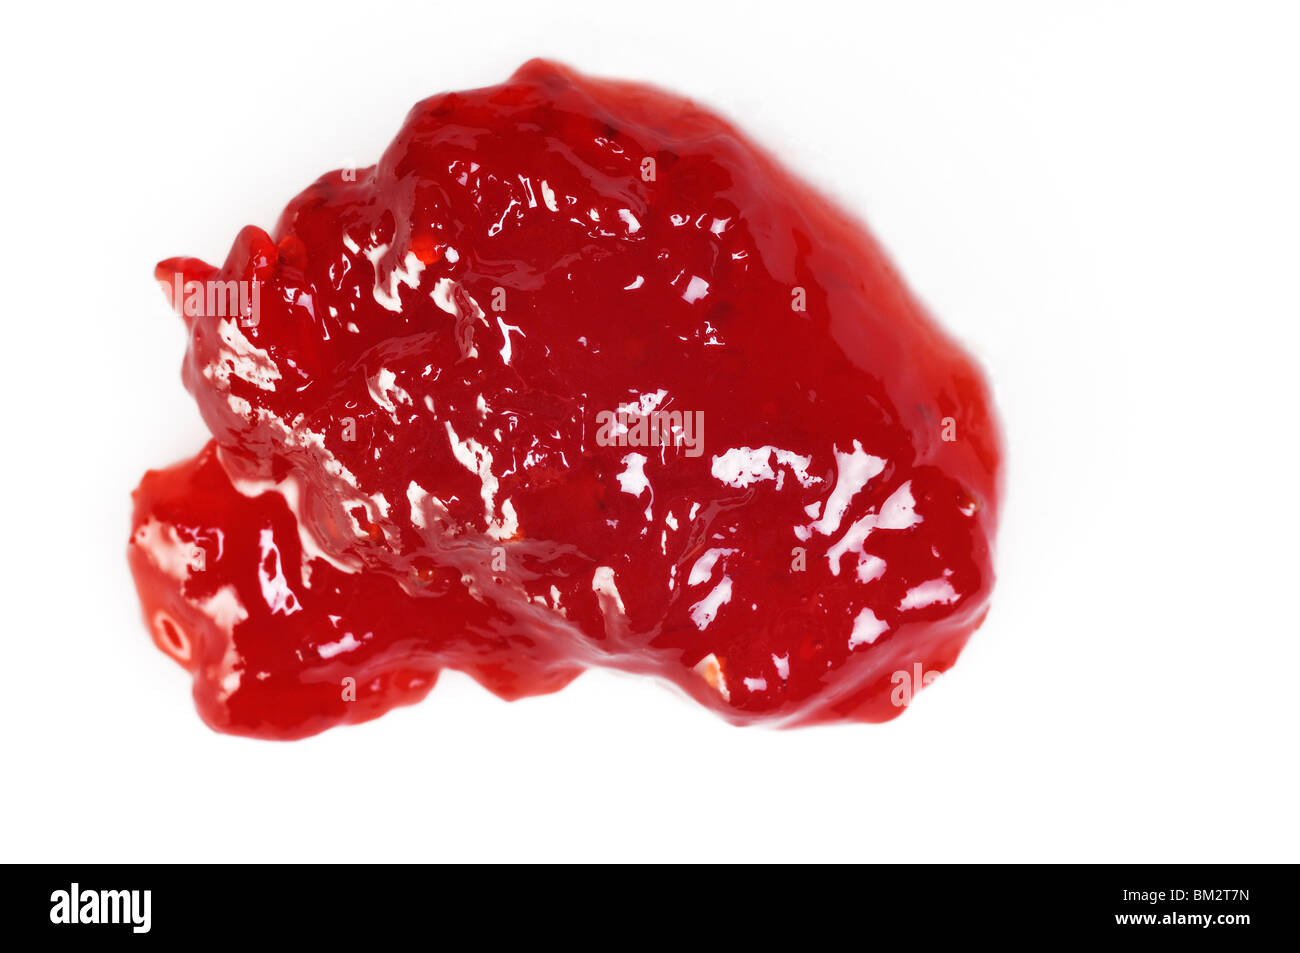 Strawberry jam isolated on white Stock Photo